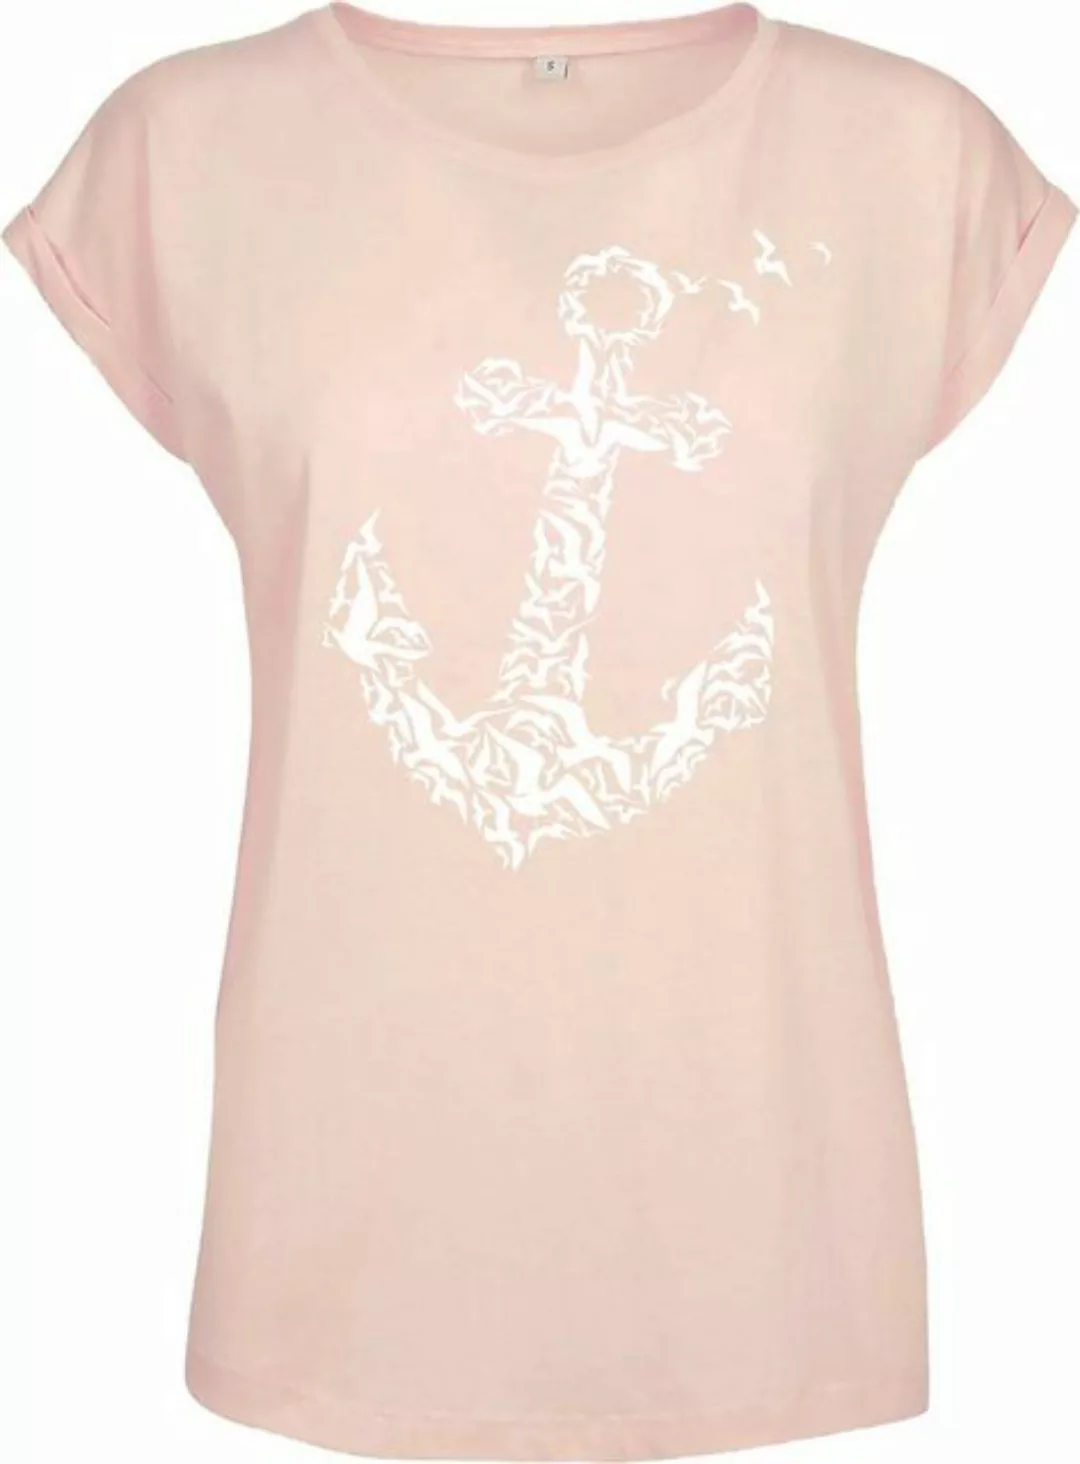 Baddery Print-Shirt Damen T-Shirt, "Anker" (Loose Fit), Segeln Meer See Kap günstig online kaufen